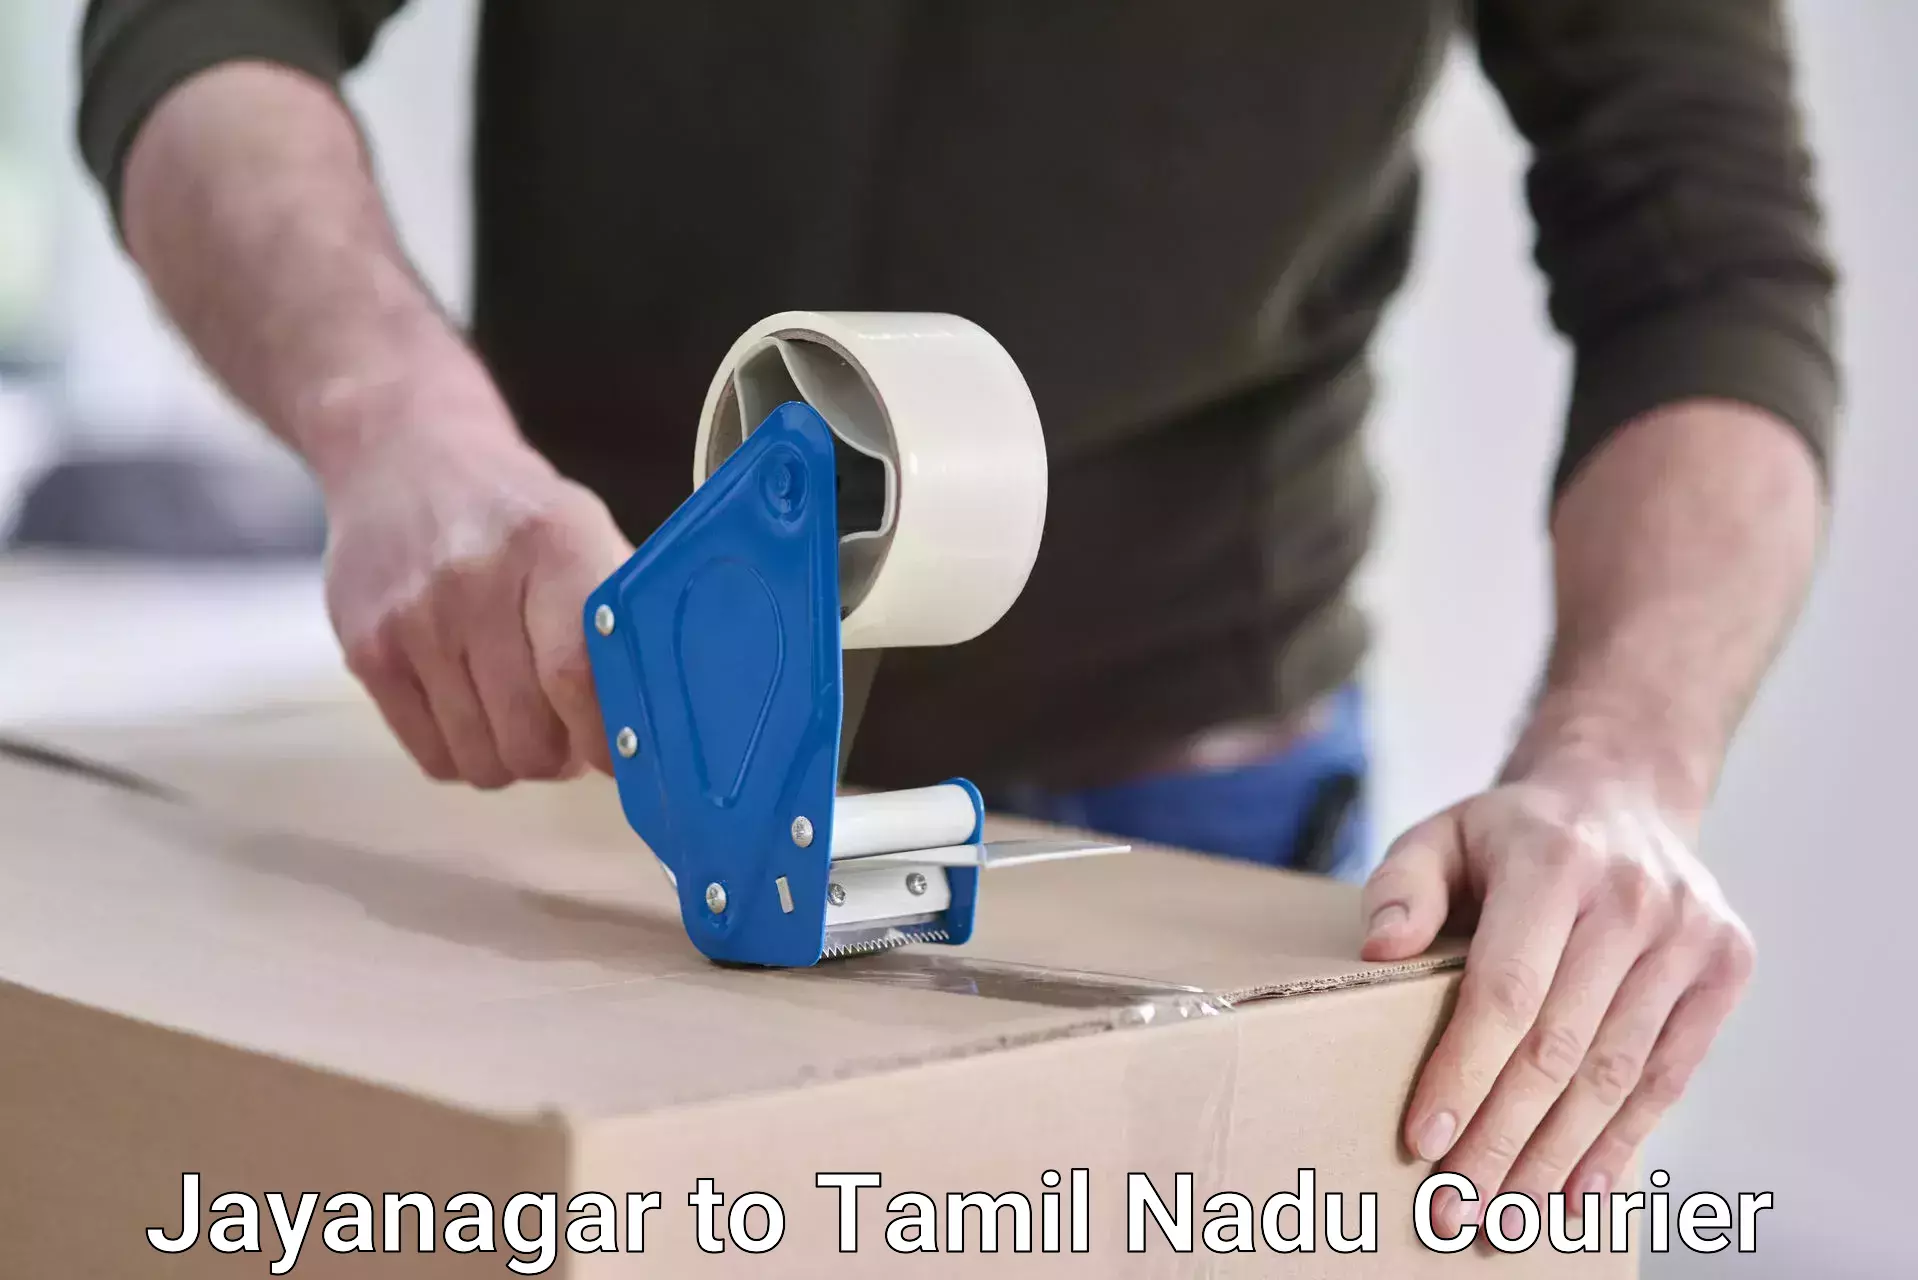 Premium courier solutions Jayanagar to Tamil Nadu